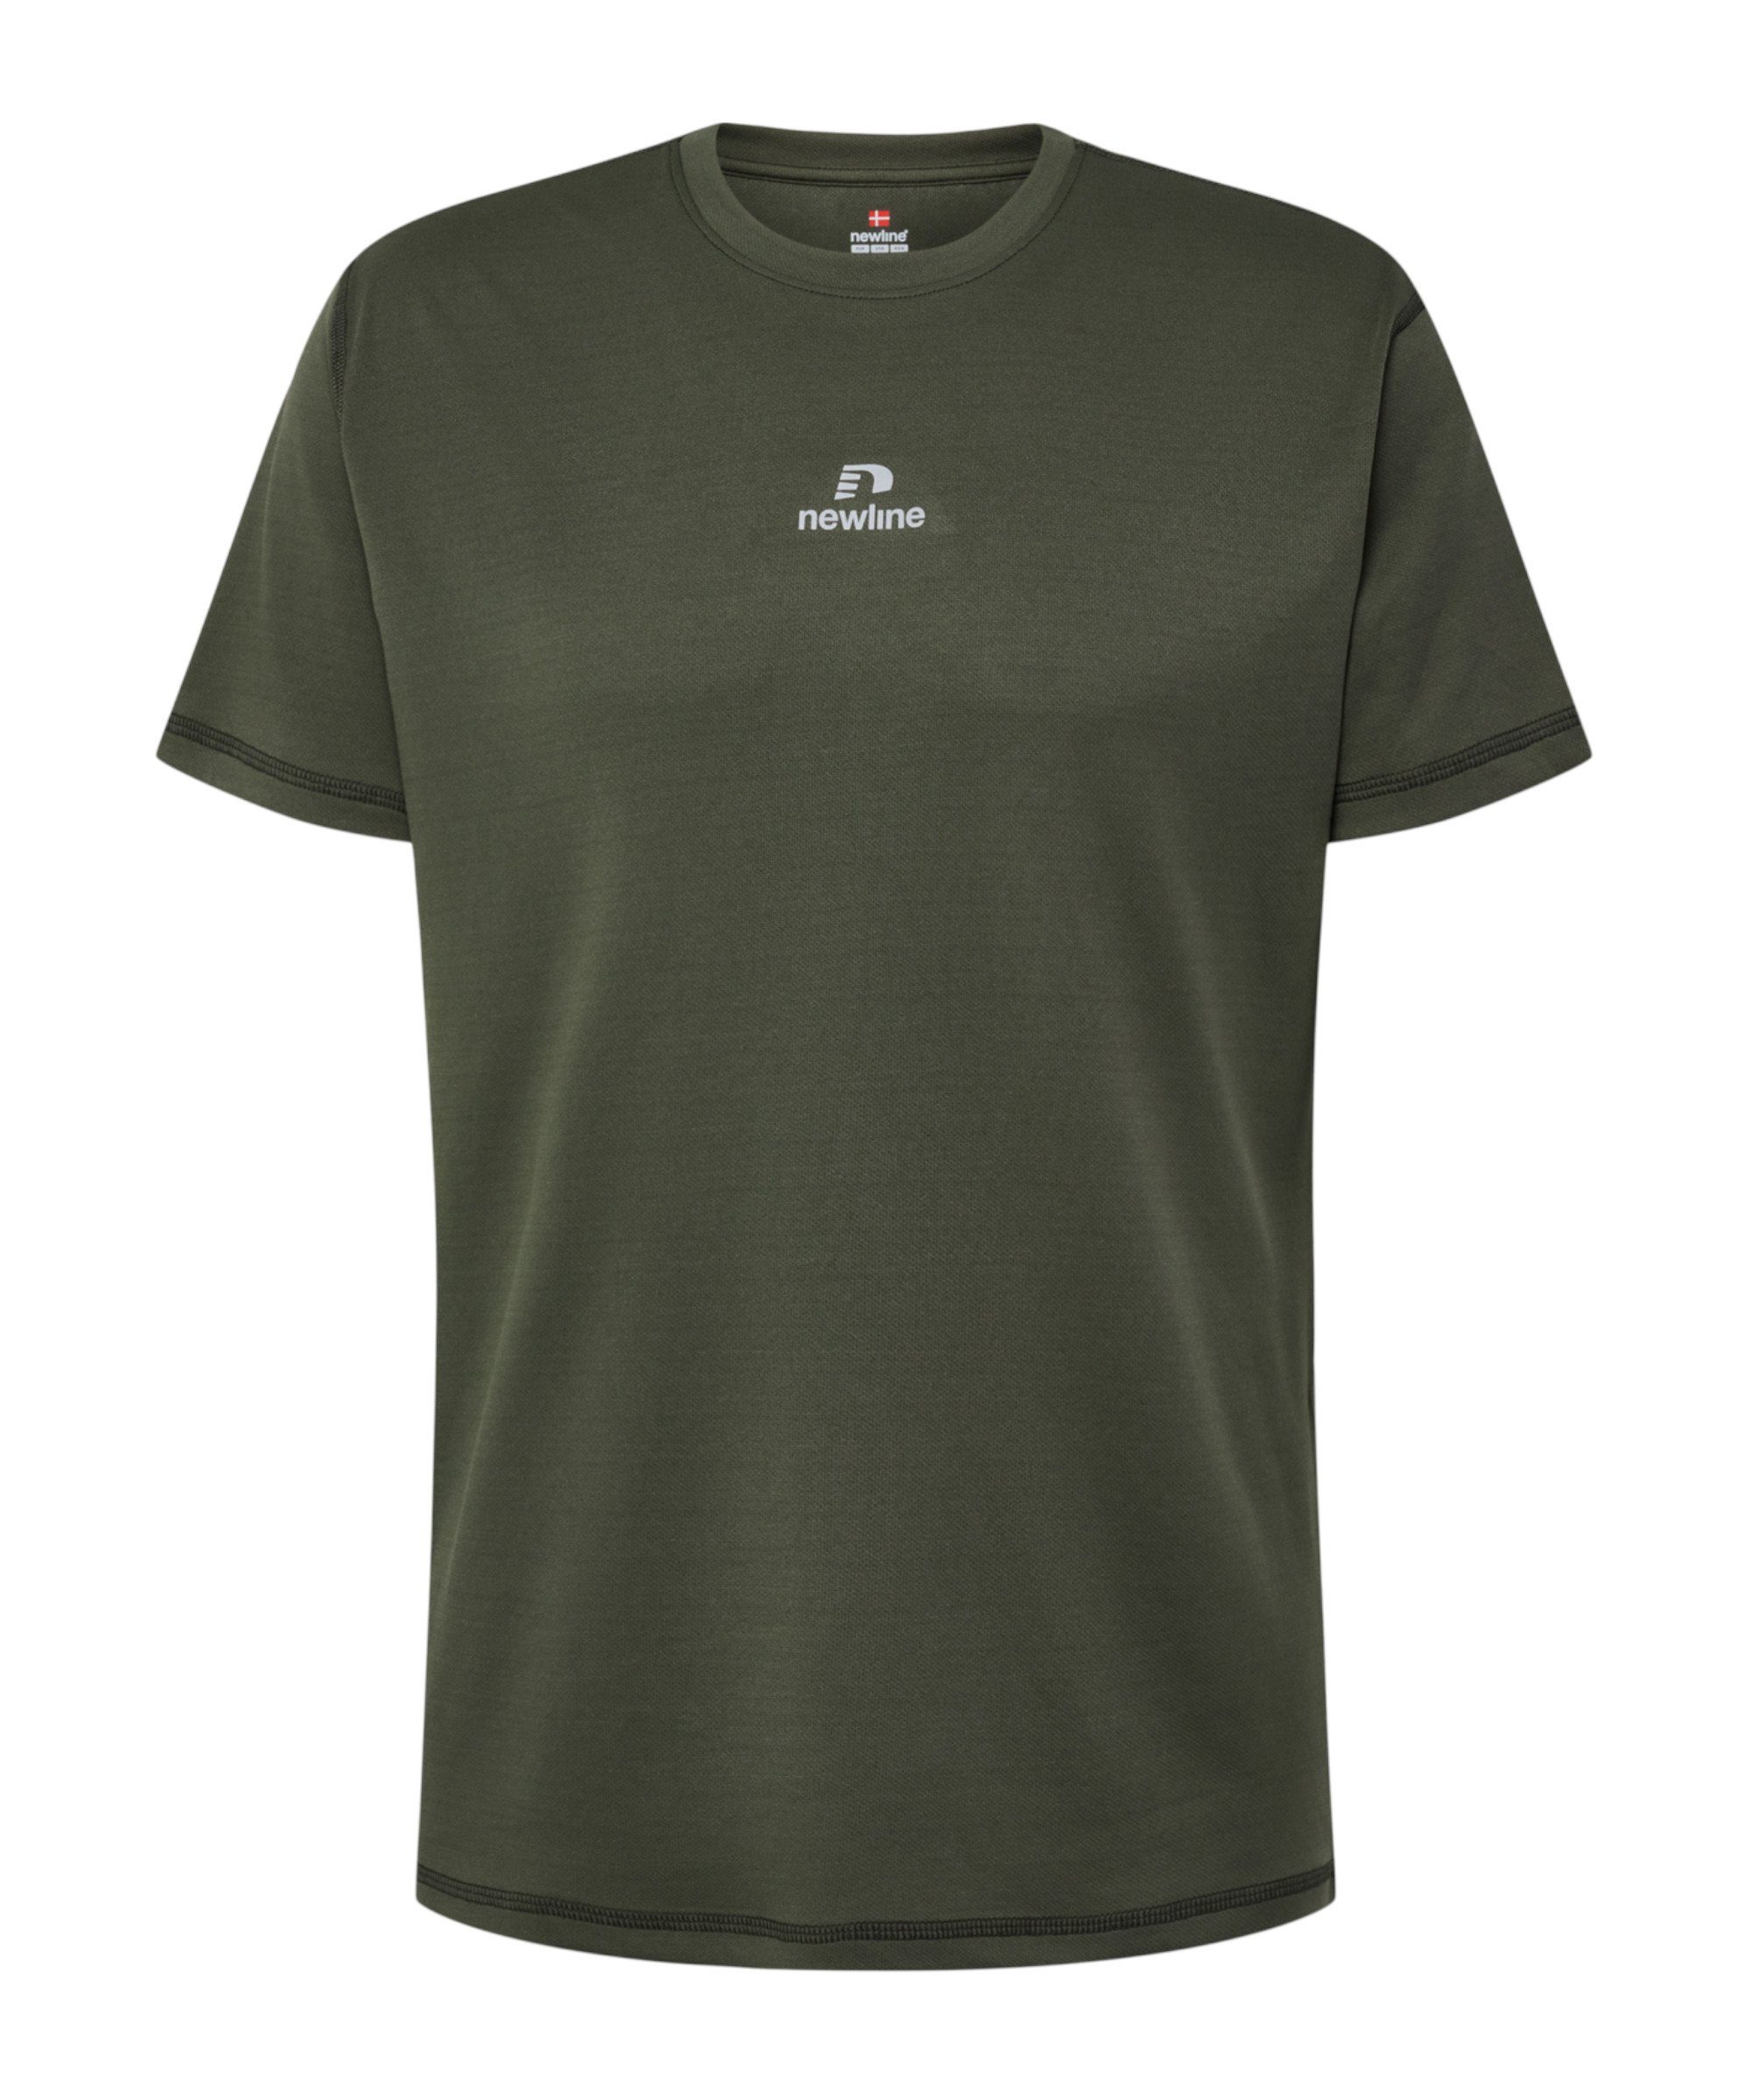 nwlBEAT grau default T-Shirt NewLine T-Shirt